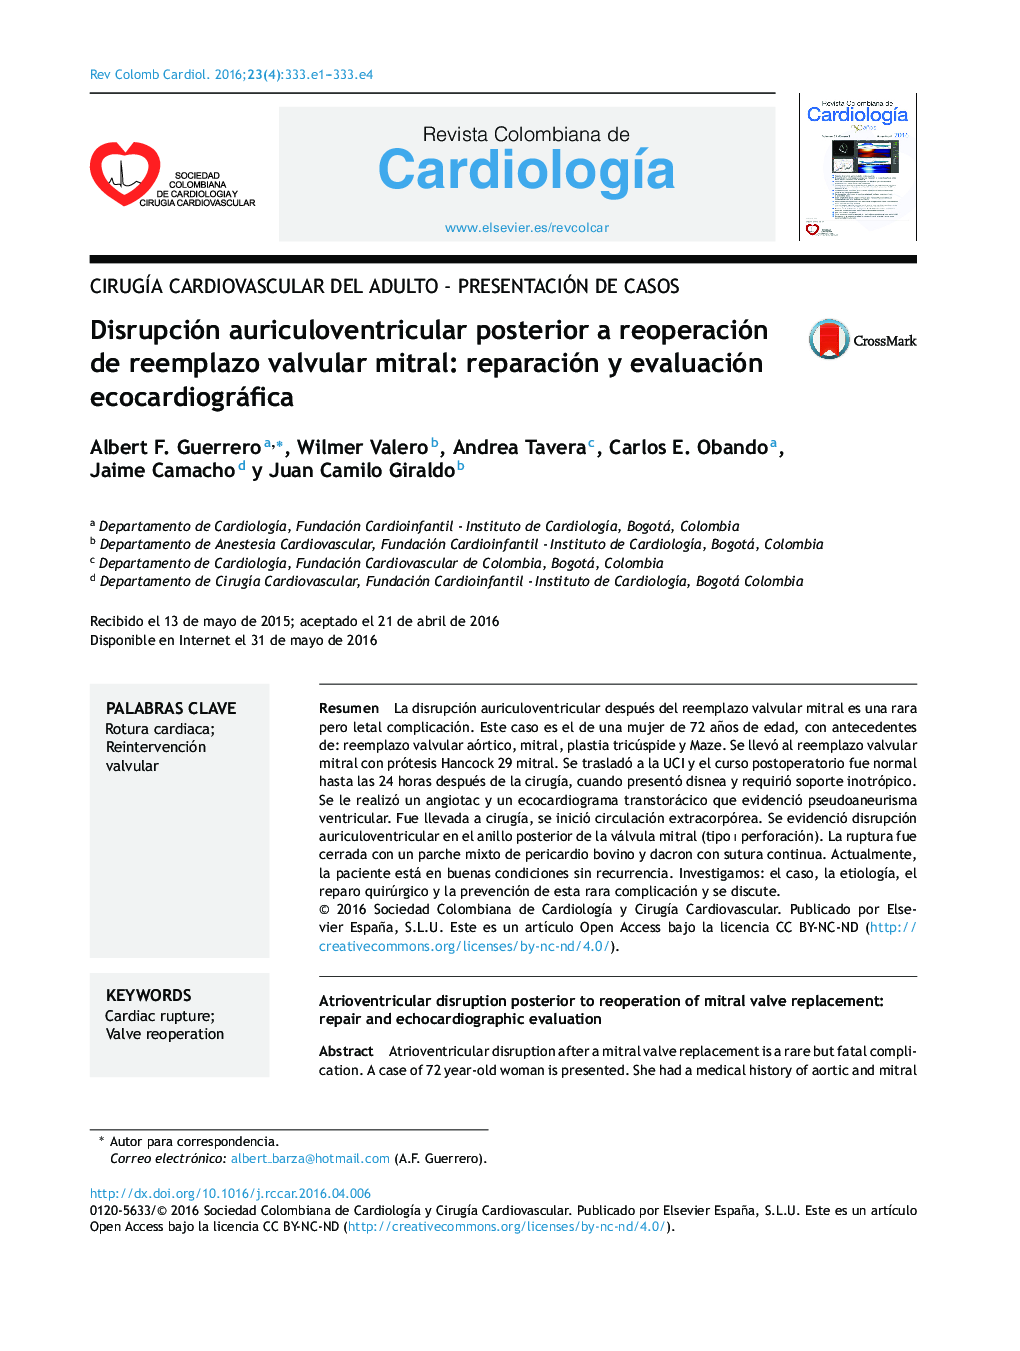 Disrupción auriculoventricular posterior a reoperación de reemplazo valvular mitral: reparación y evaluación ecocardiográfica